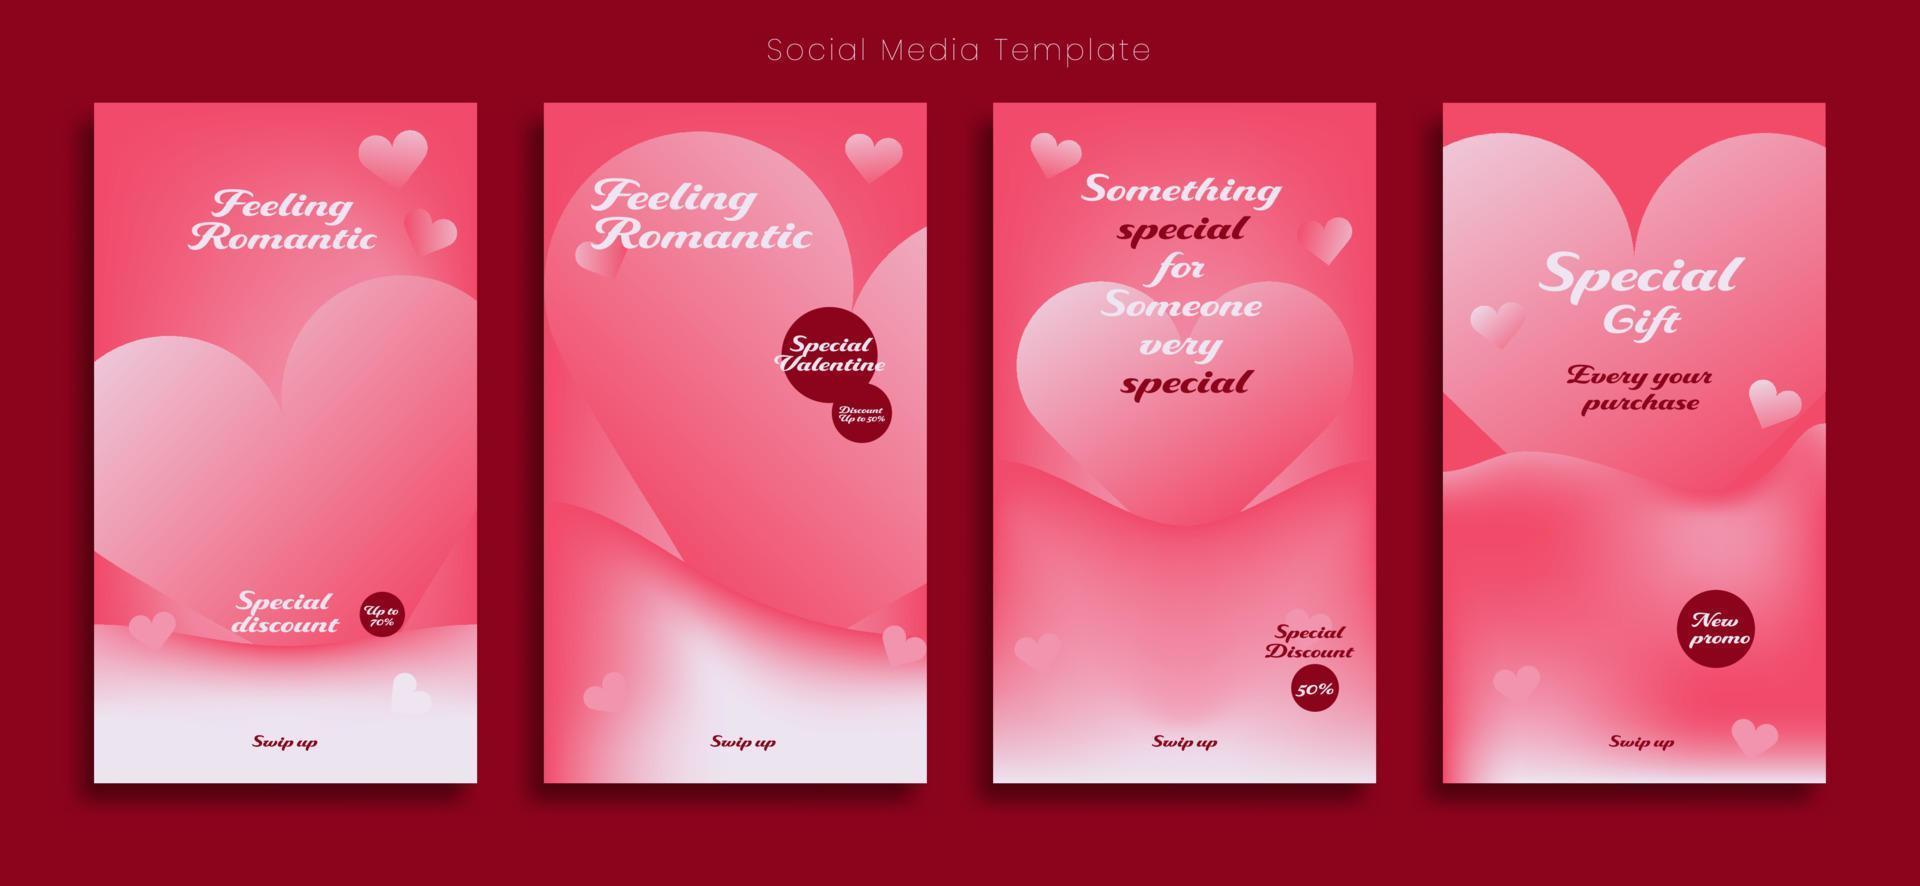 modelo de histórias de mídia social com fundo 3d romântico de amor ou coração é adequado para compartilhar vendas com desconto de alimentos doces e lanches, etc vetor